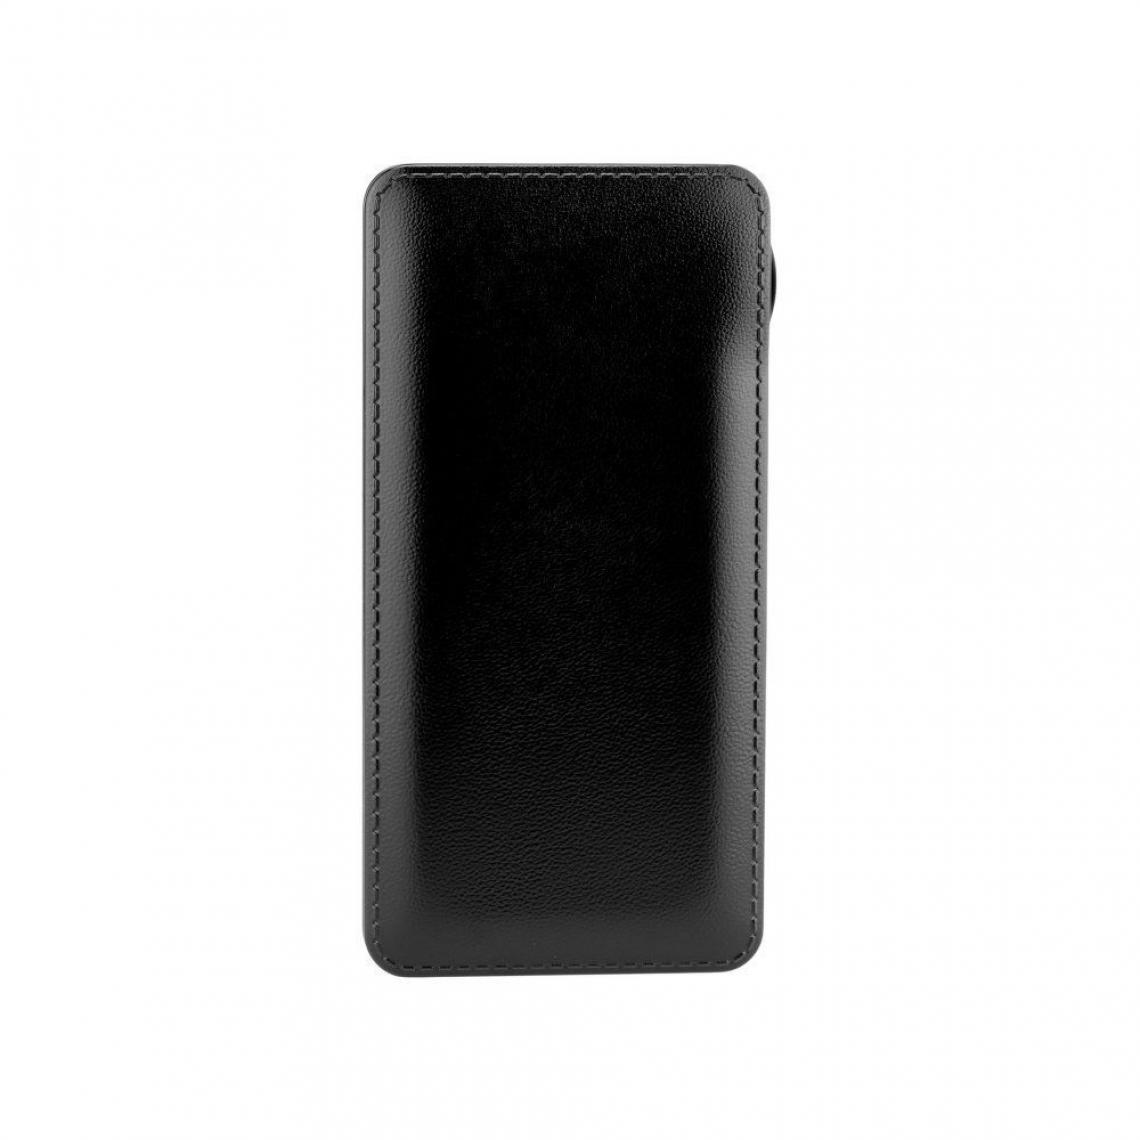 Ozzzo - Chargeur batterie externe 20000 mAh powerbank ozzzo noir pour Chuwi HiPad - Autres accessoires smartphone